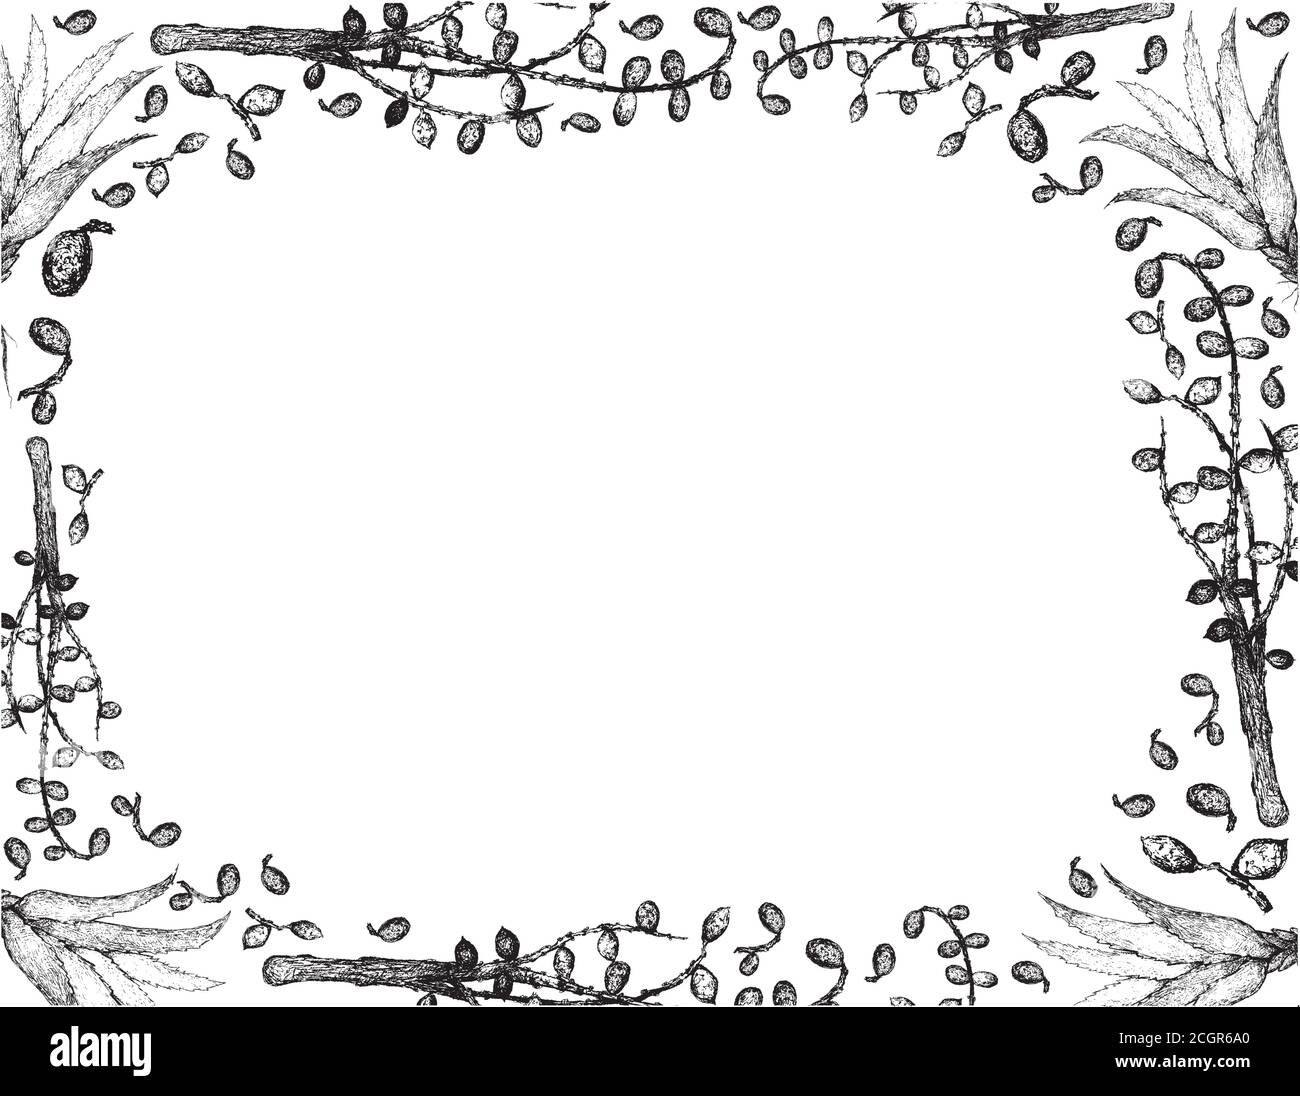 Kräuter und Pflanzen, handgezeichnete Illustration Rahmen von Serenoa Repens oder Säge Palmetto Beeren mit Aloe Vera Pflanzen. Stock Vektor